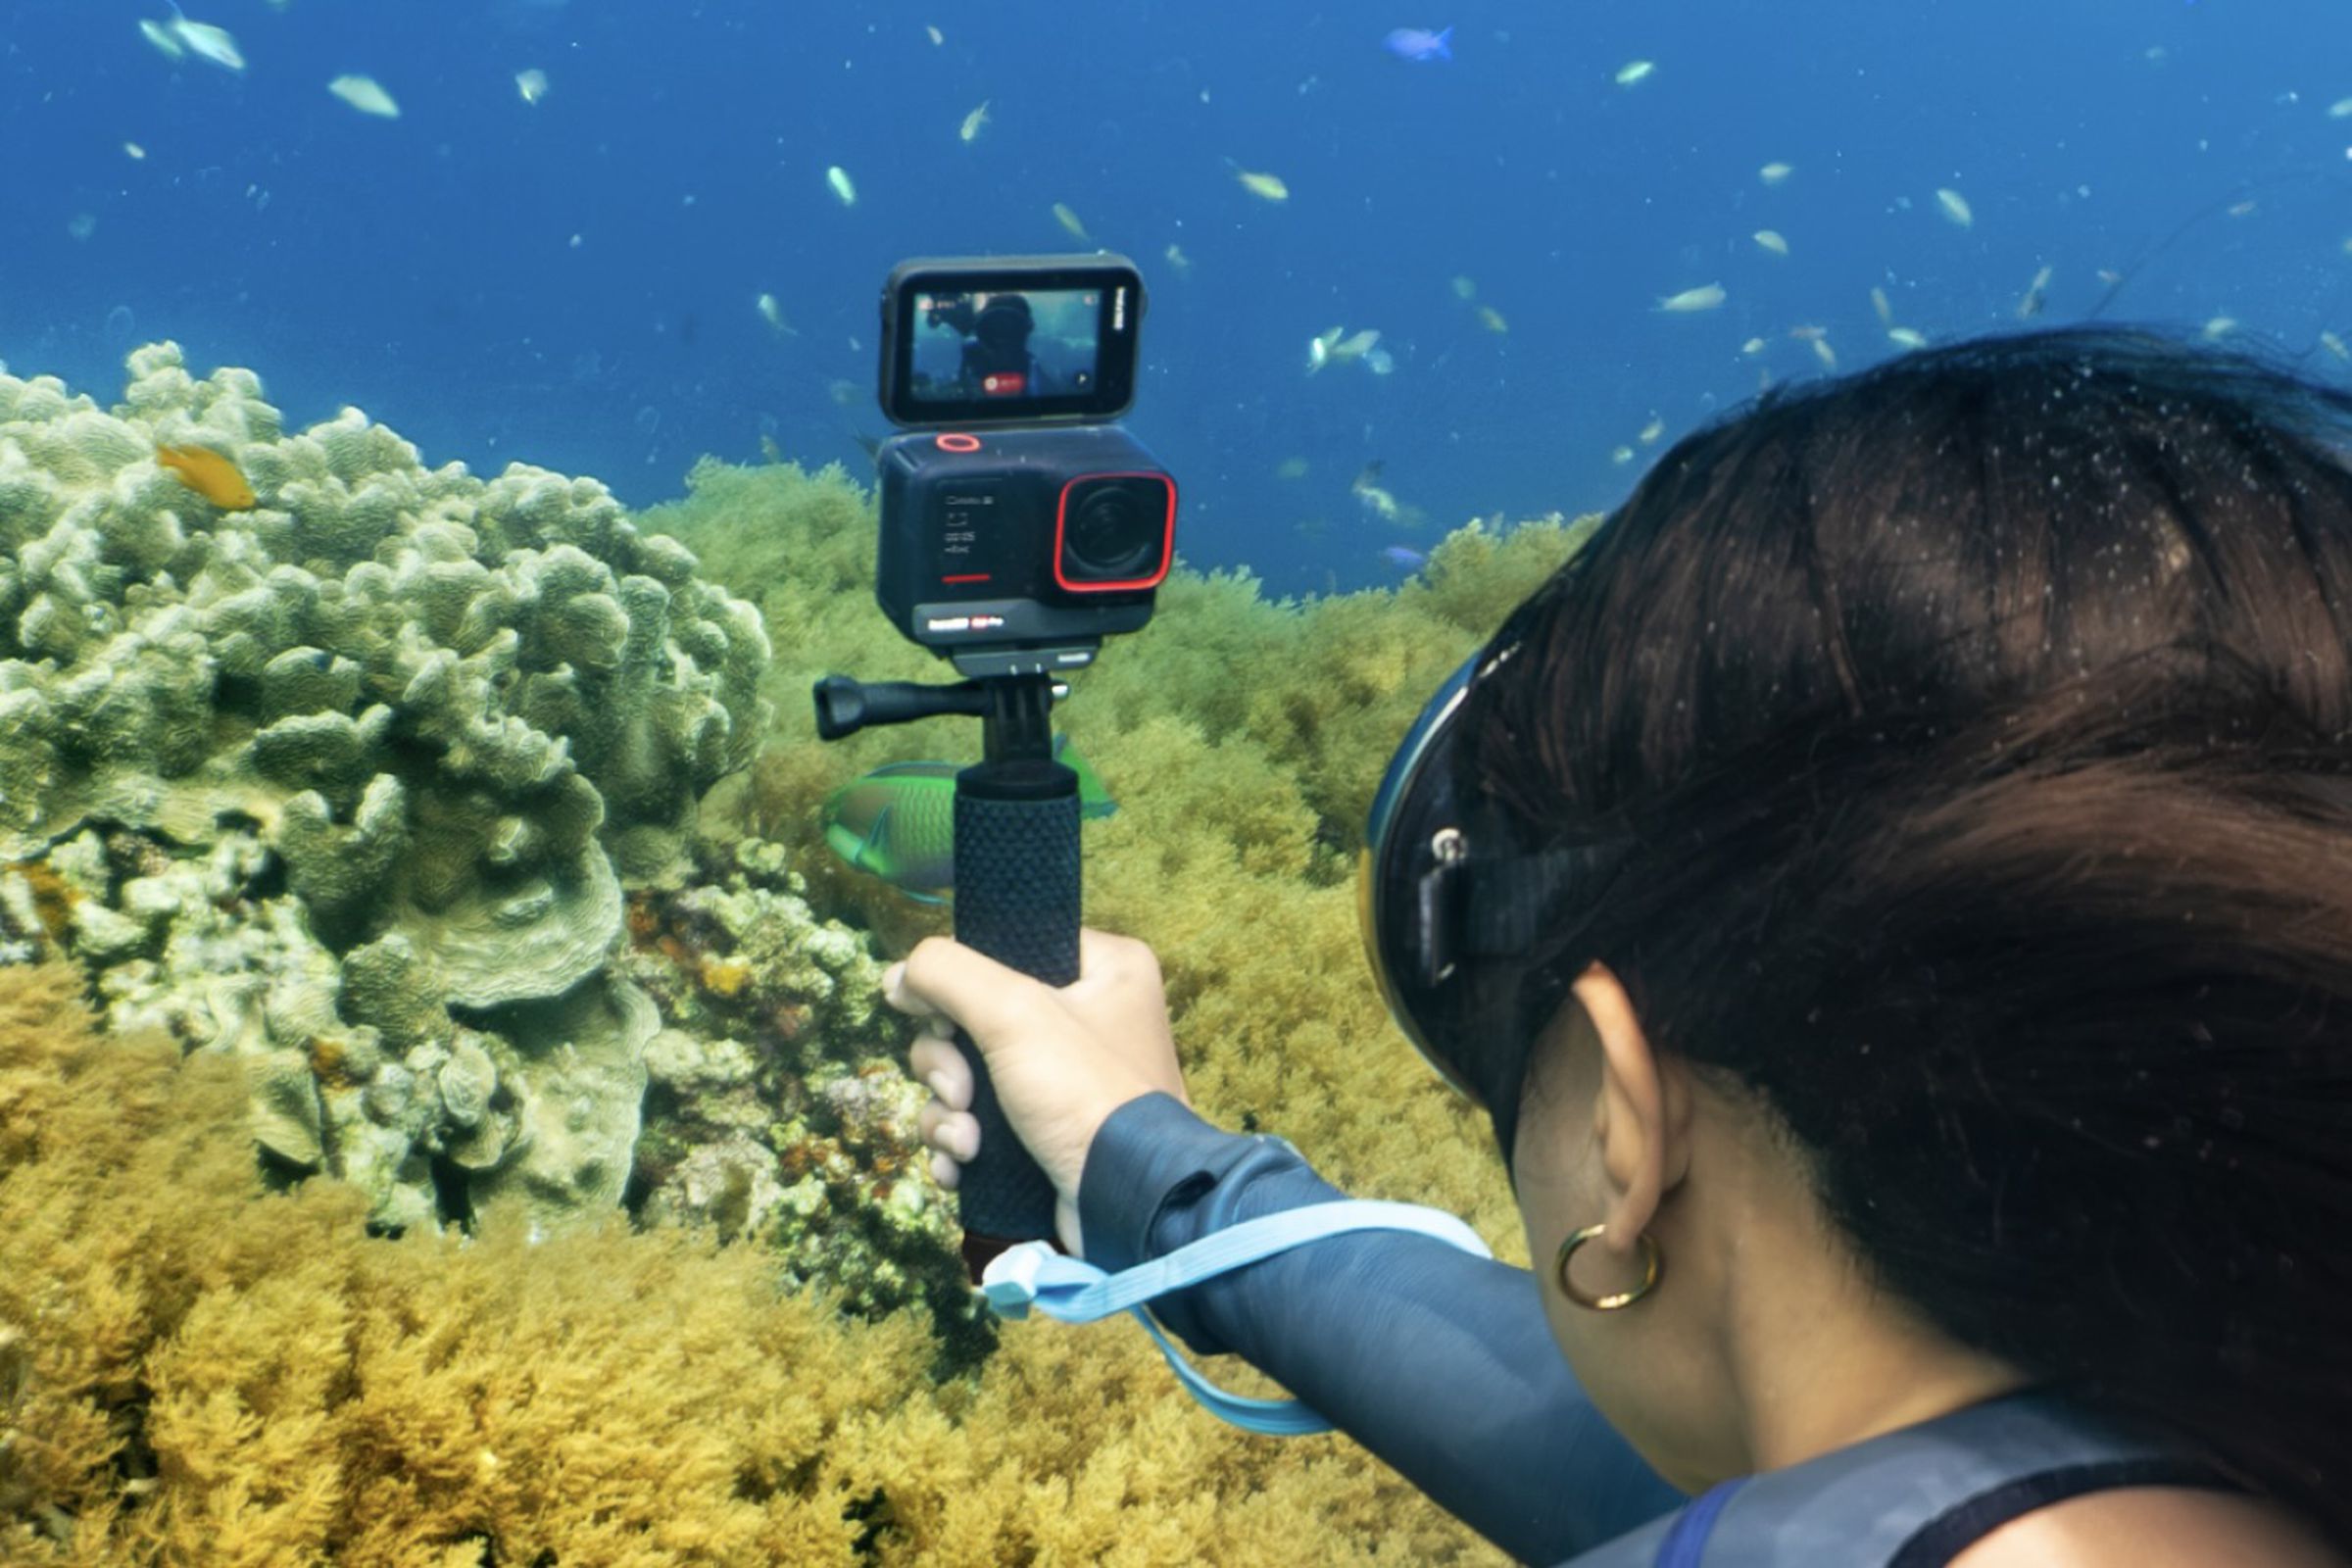 استخدام الكاميرا في وضع السيلفي تحت الماء بالقرب من شقائق النعمان